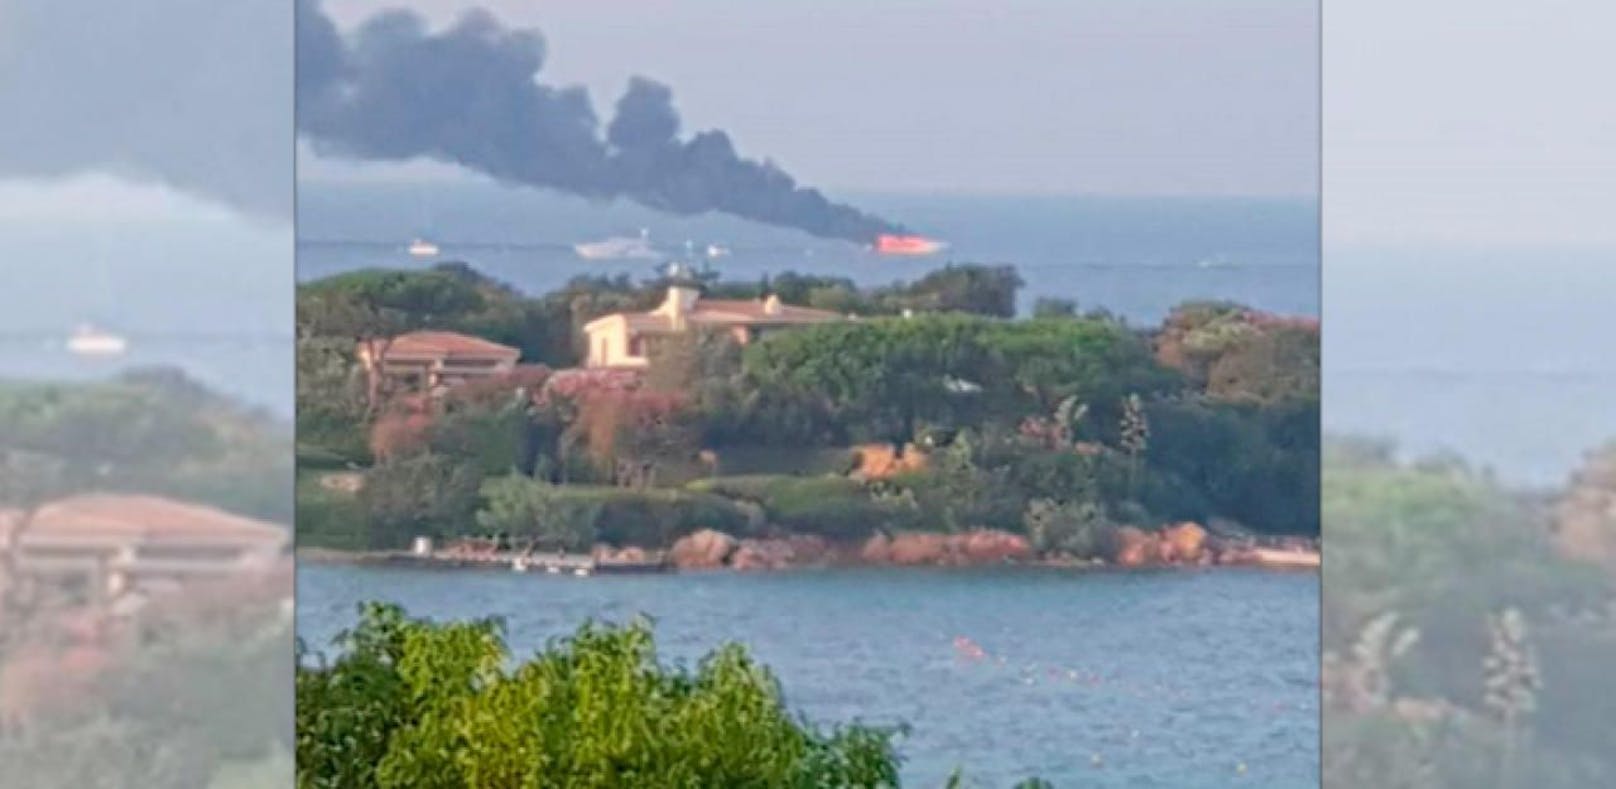 19-Meter-Yacht fing vor Porto Cervo Feuer. Kurz Zeit später sank das Boot. Alle acht Personen an Bord überlebten.